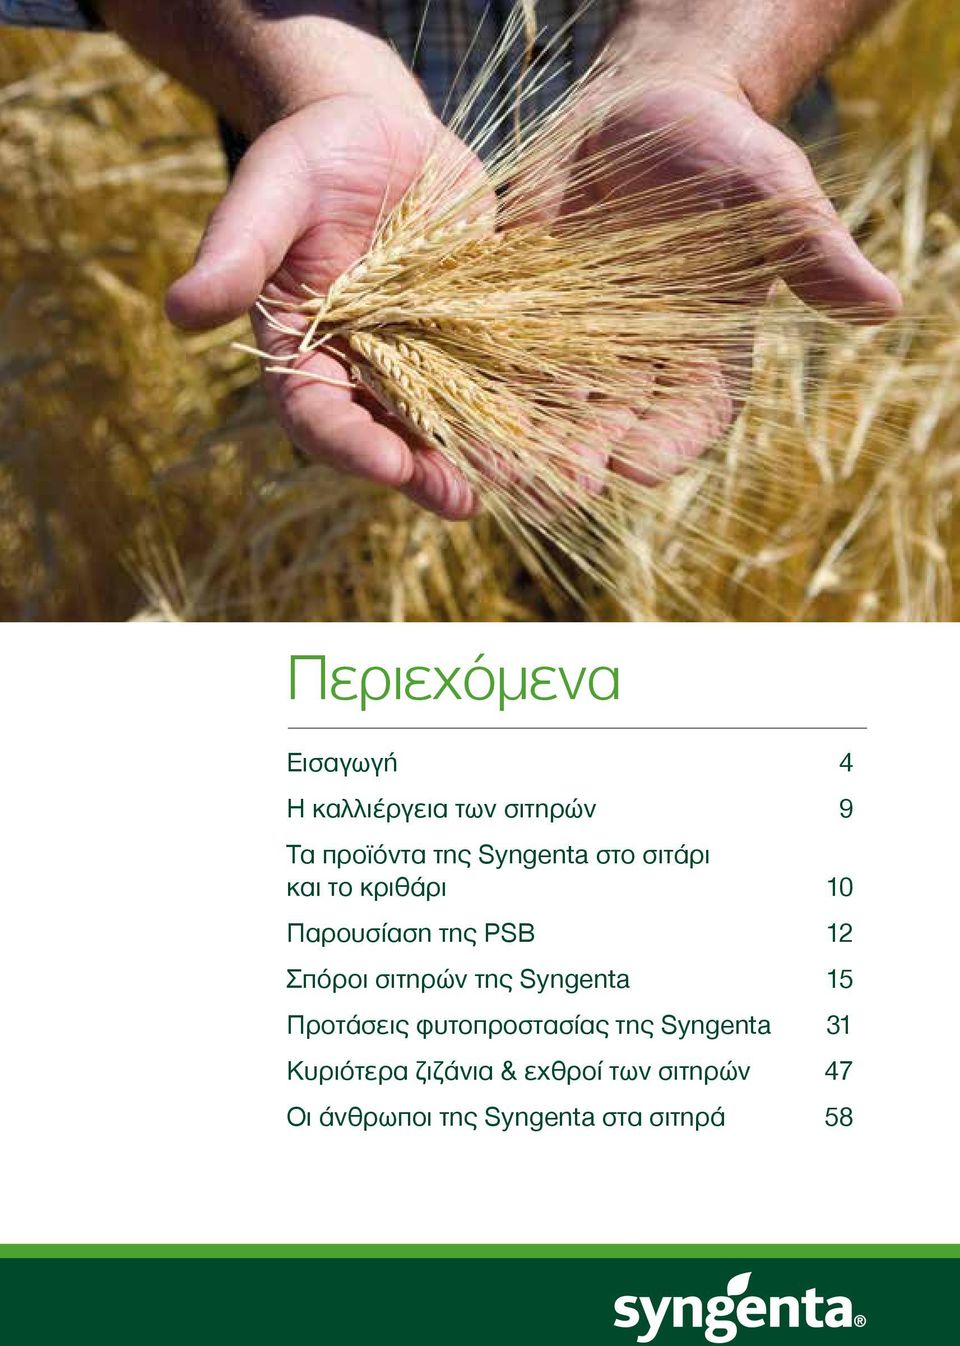 σιτηρών της Syngenta 15 Προτάσεις φυτοπροστασίας της Syngenta 31